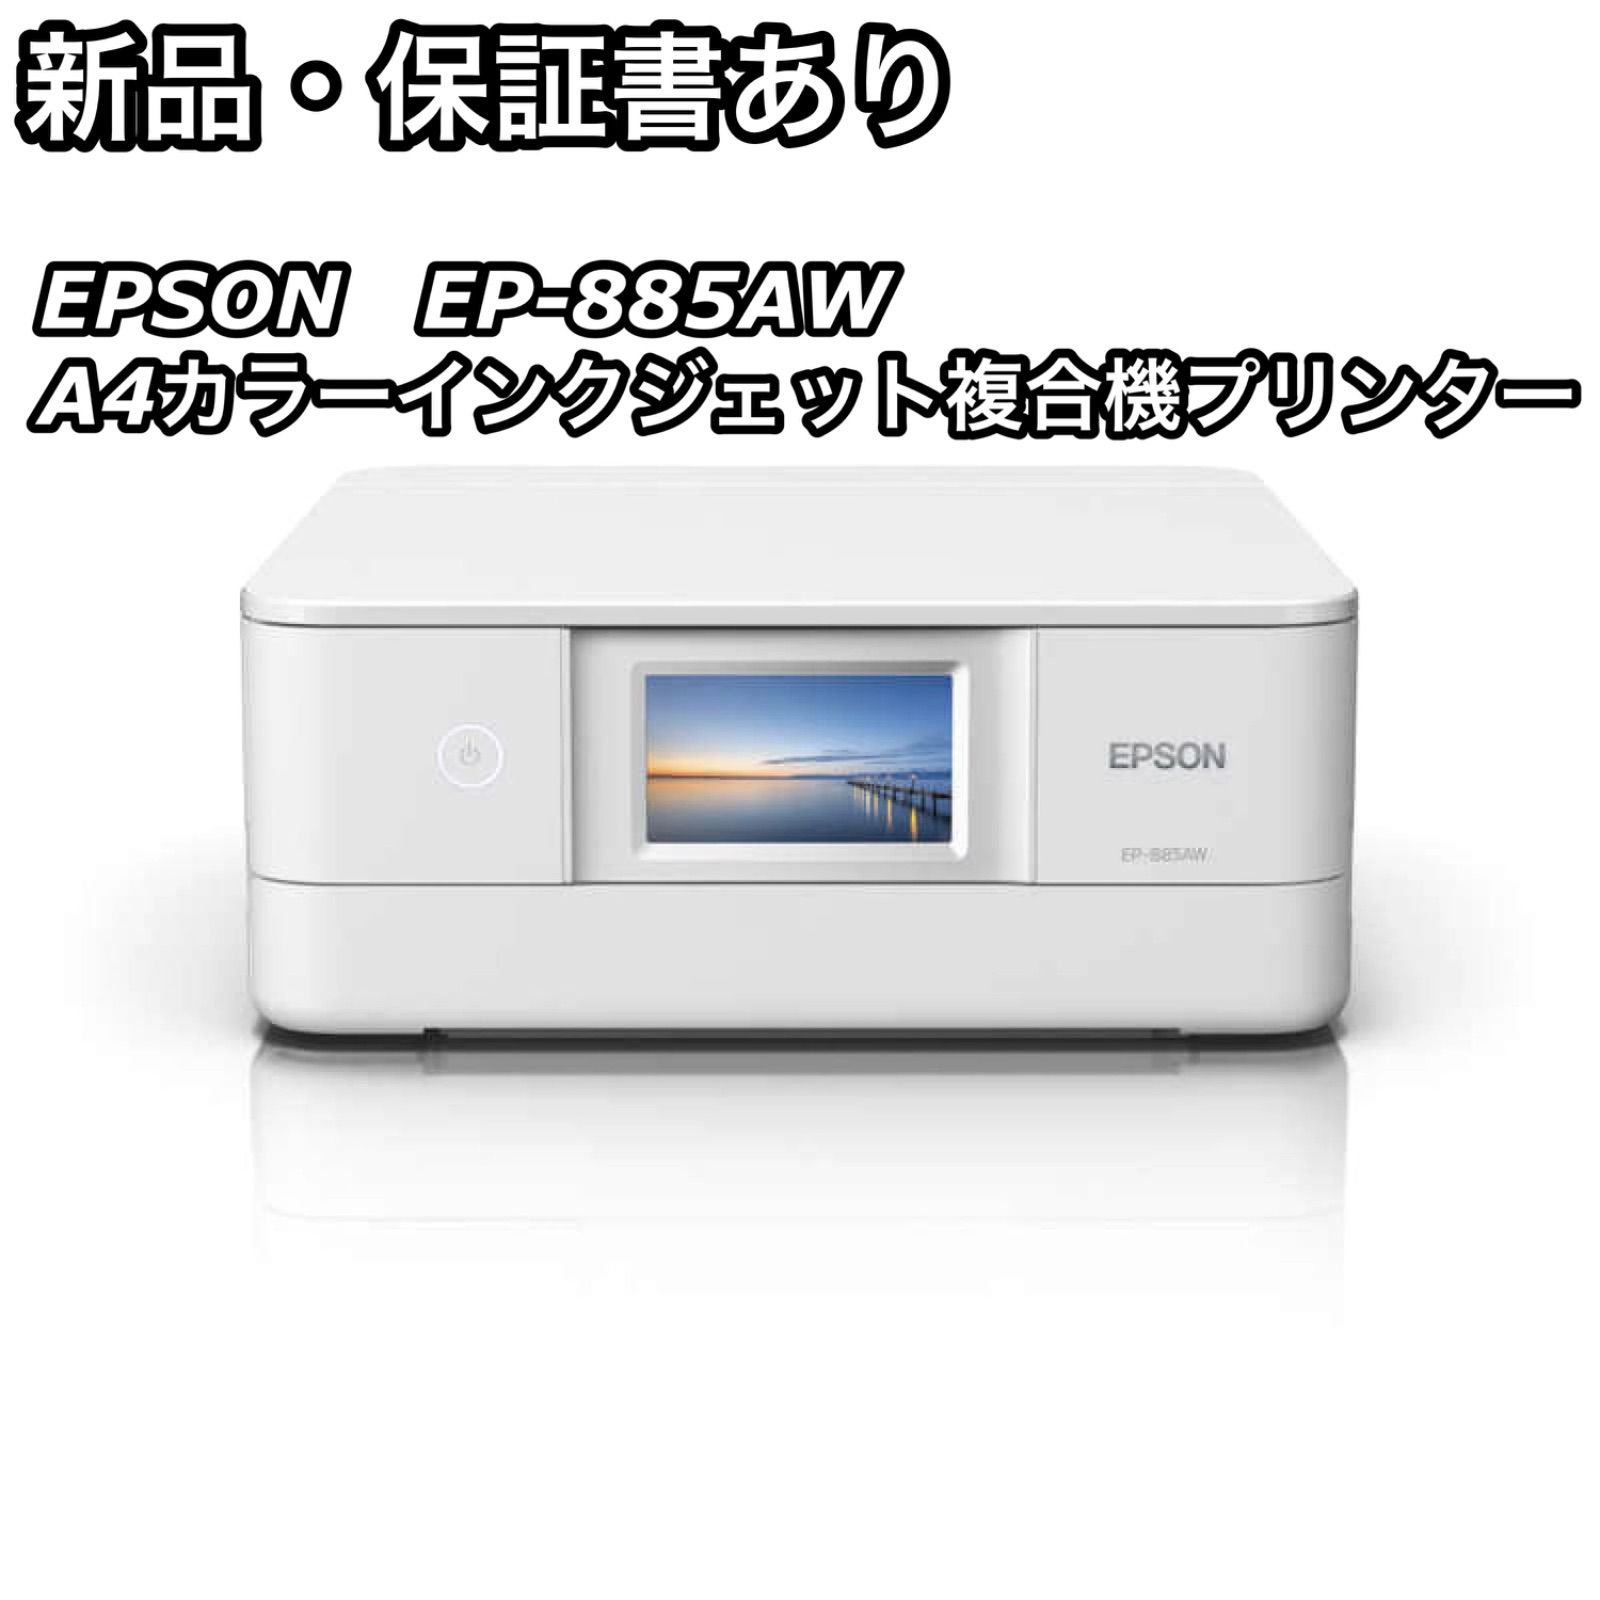 新品・未使用 上位・複合機種 EPSON プリンター EP-979A3 メーカー ...